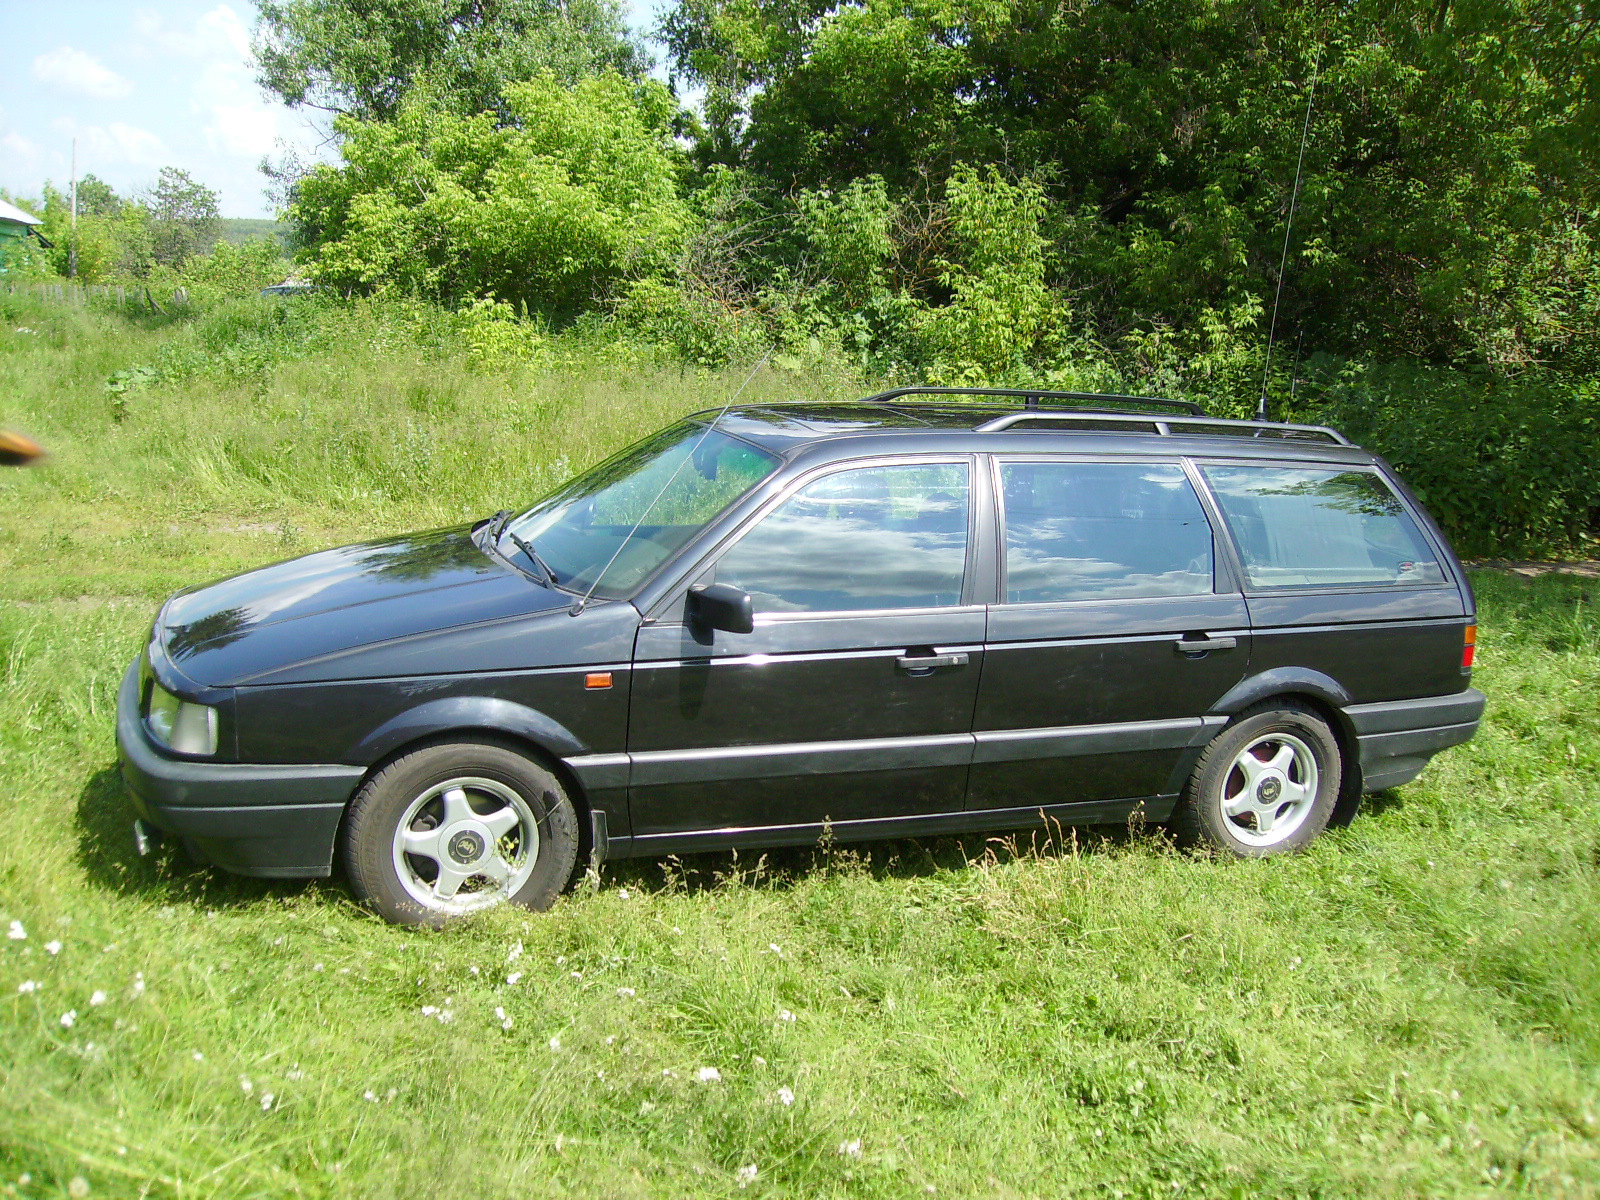 Фольксваген пассат 3 универсал. Volkswagen Passat b3 универсал. Volkswagen Passat b3 универсал 1991. Volkswagen Passat b3 1990 универсал. Volkswagen Passat b3 variant.